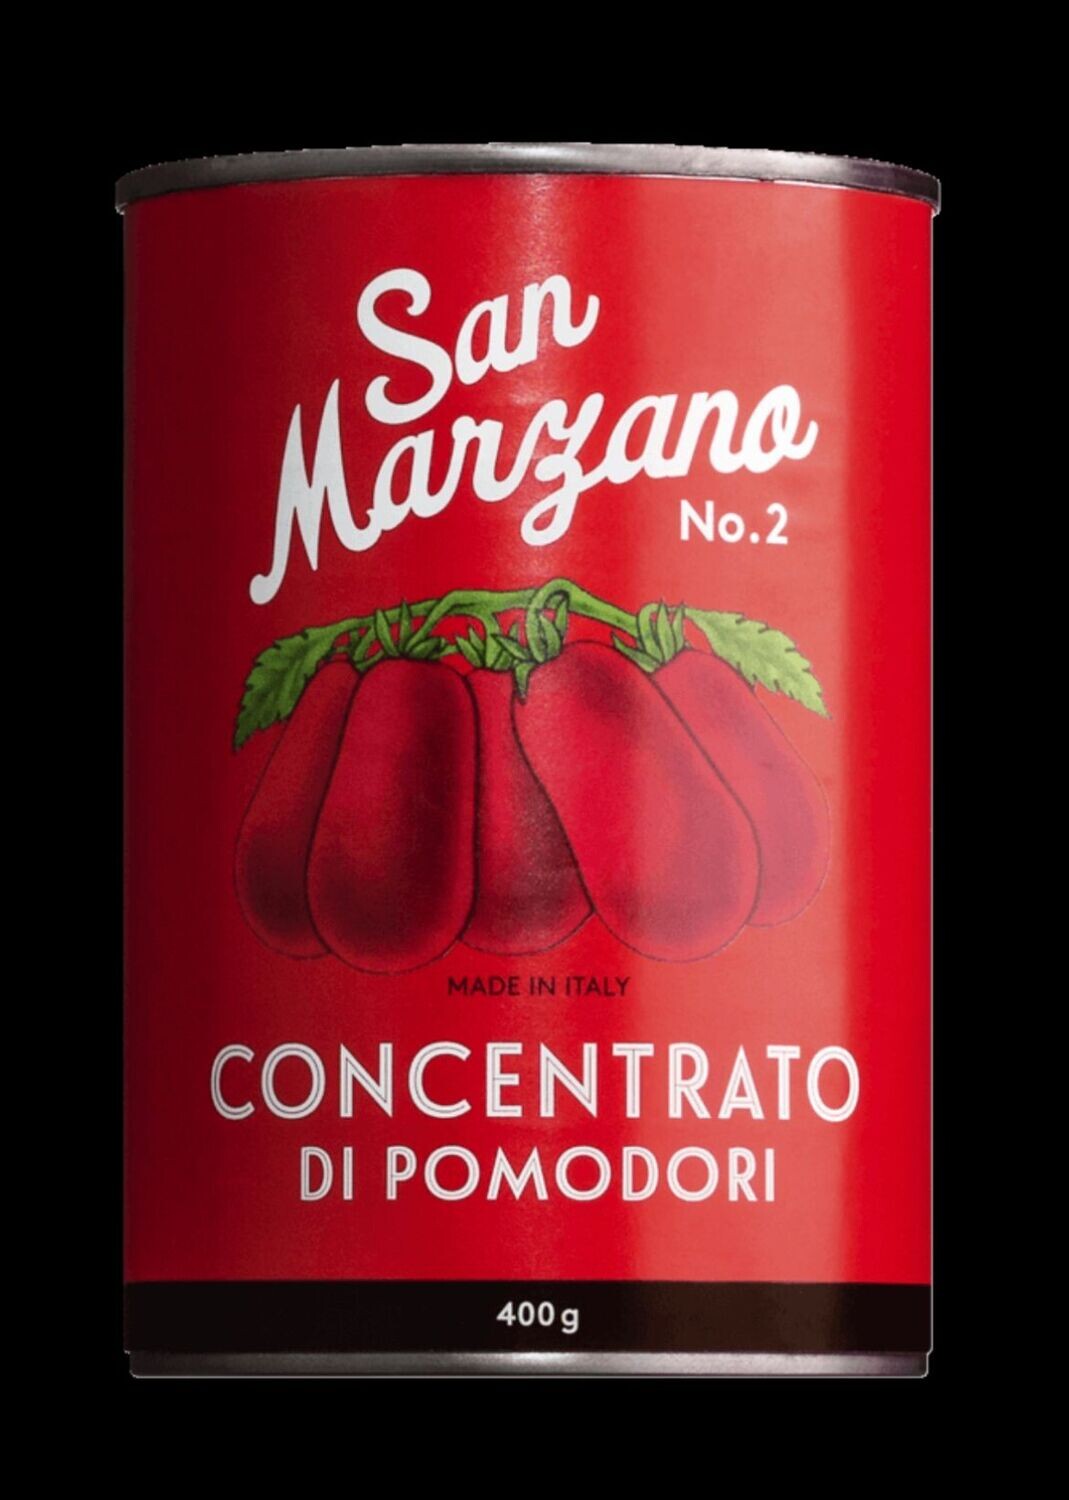 Doppelt konzentriertes Tomatenmark aus San Marzano Tomaten, schmeckt intensivfruchtig und gibt Saucen eine geschmackliche, mediterrane Tiefe!